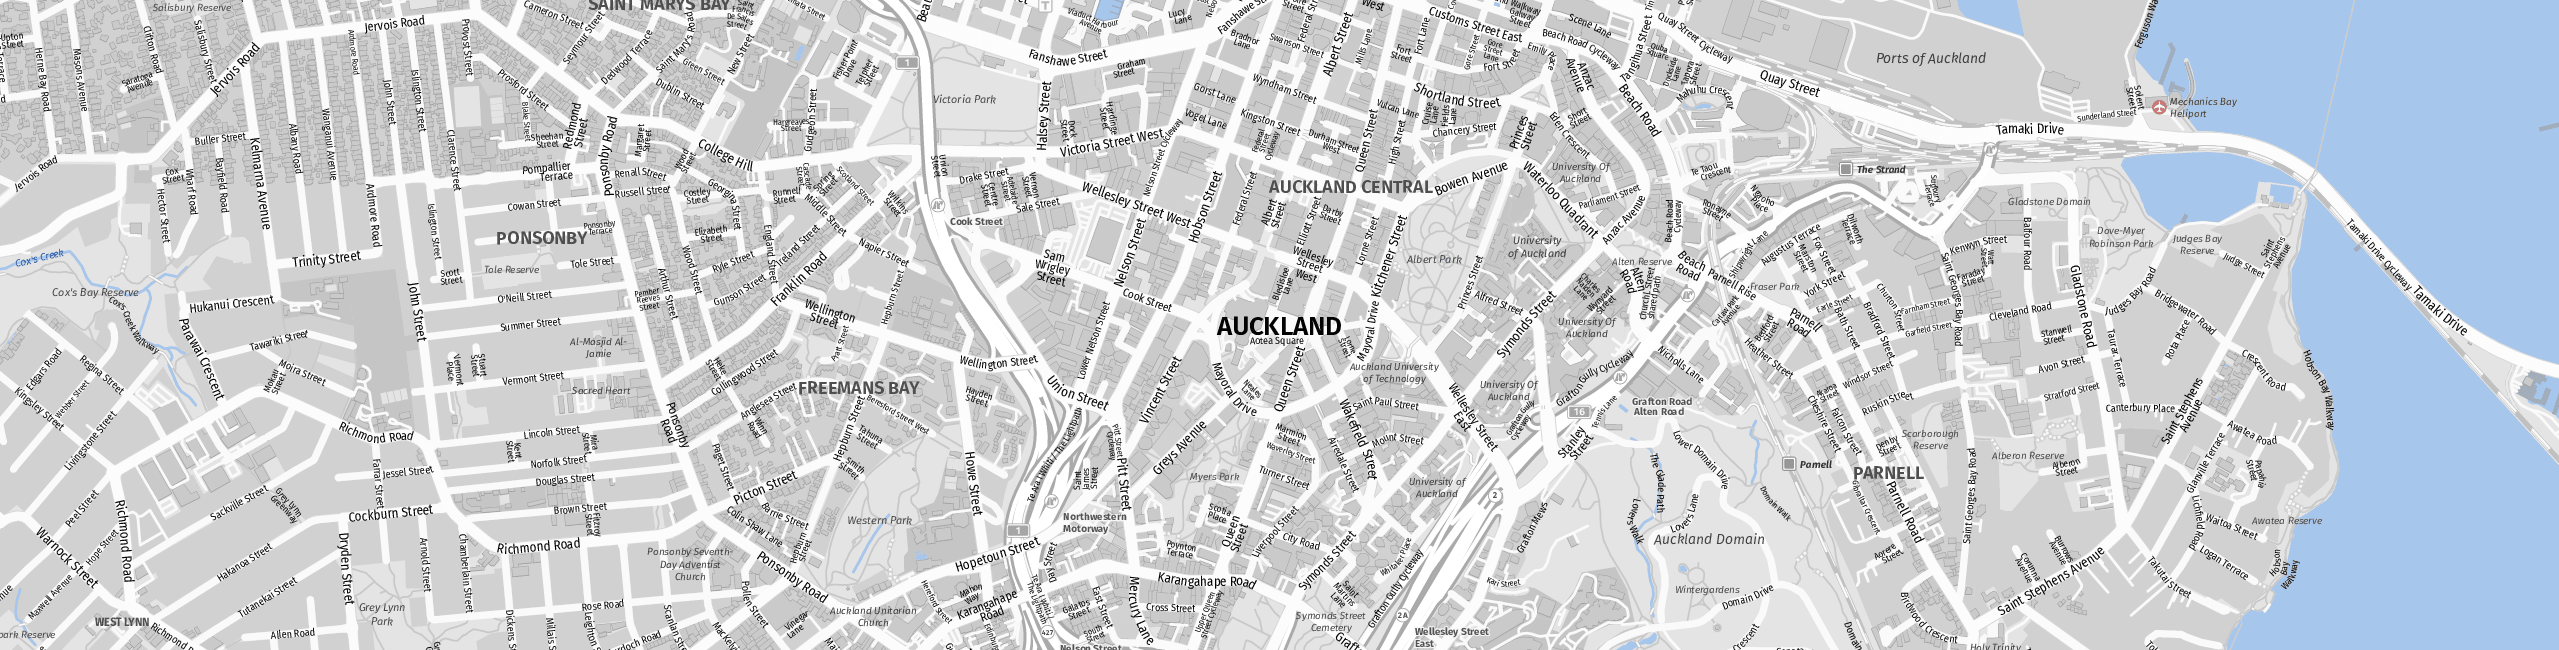 Stadtplan Auckland zum Downloaden.